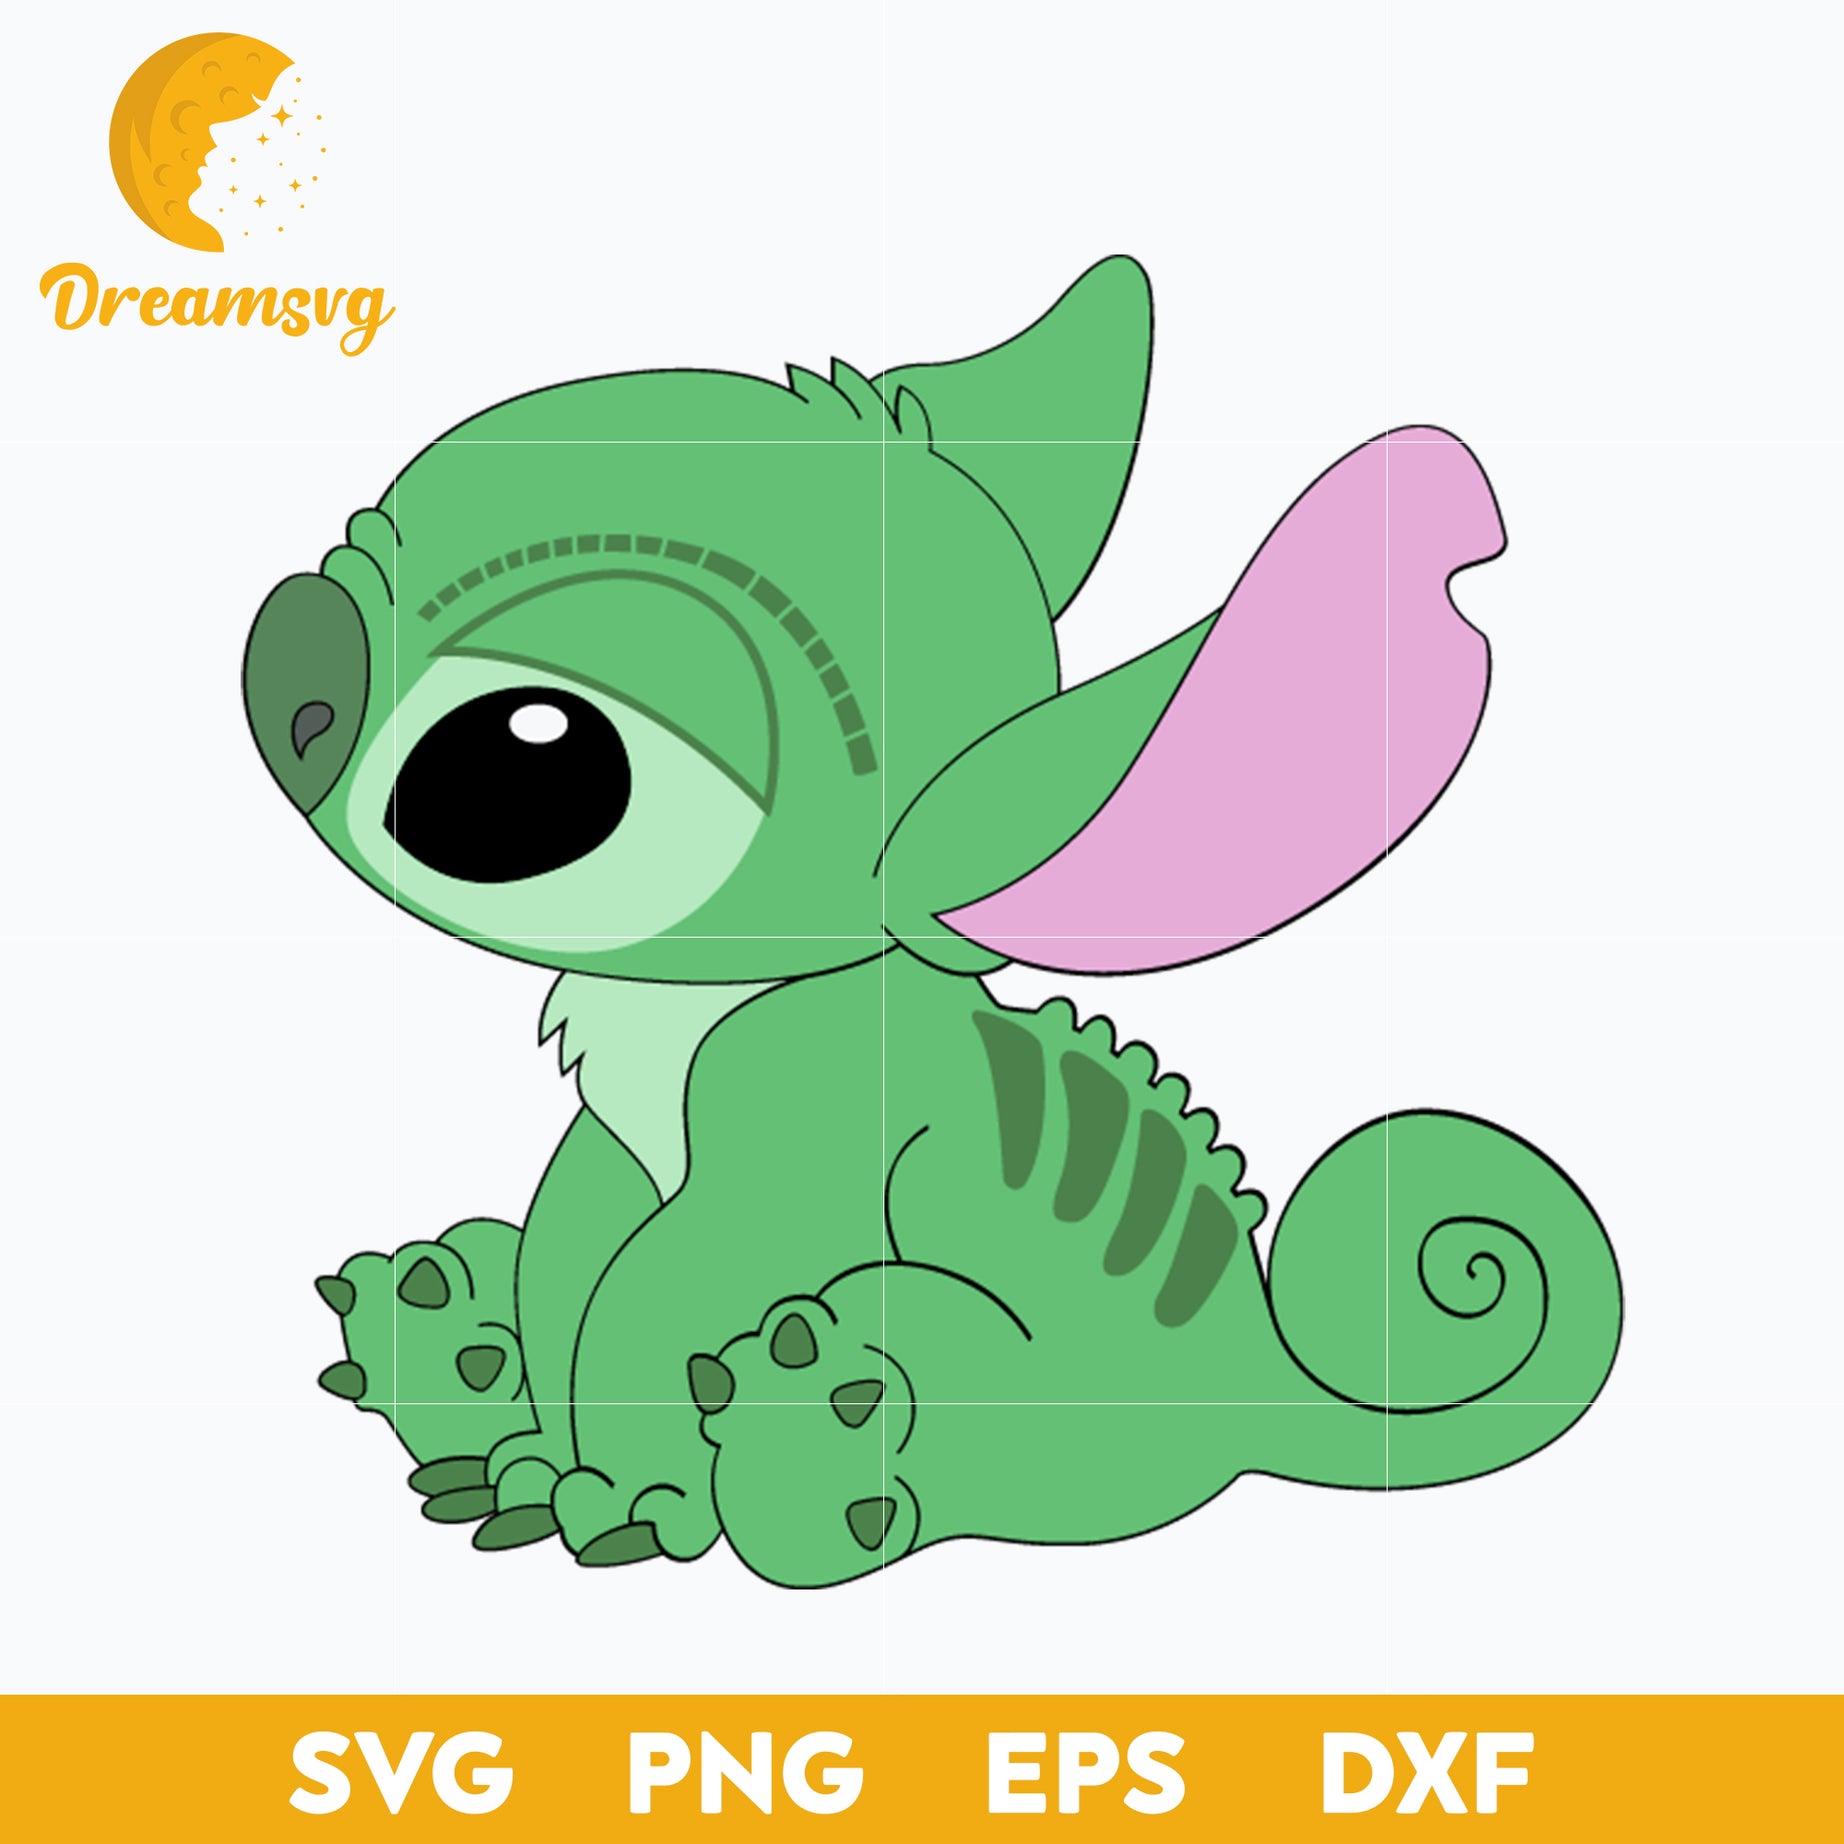 Stitch Chameleon SVG, Chameleon Dress Up SVG, Stitch Animal Sidekick SVG, Stitch Halloween SVG, PNG, DXF, EPS Digital File.